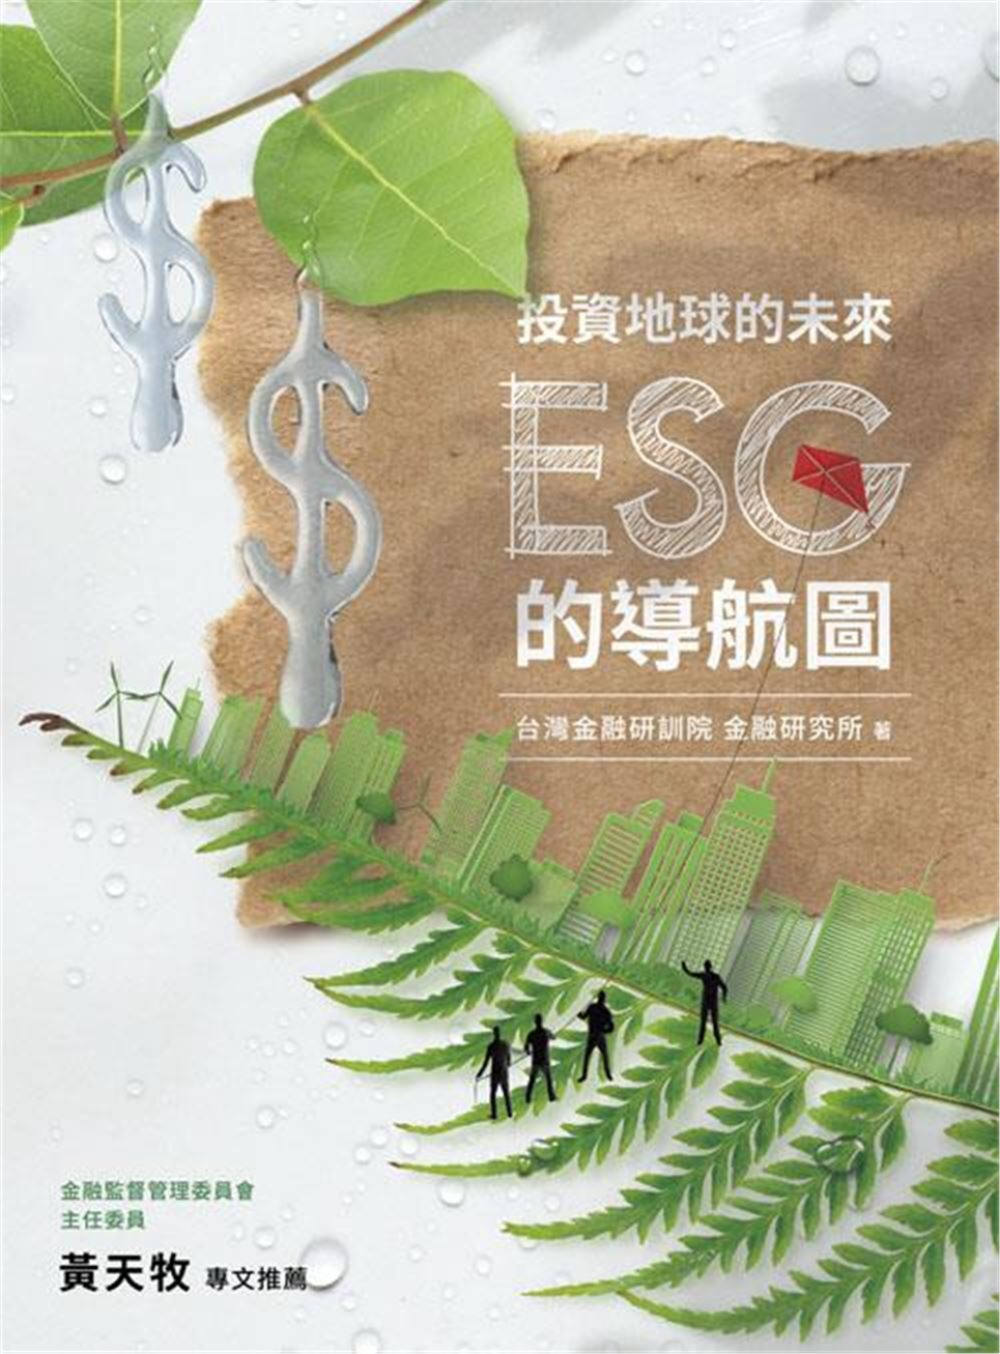 投資地球的未來：ESG的導航圖